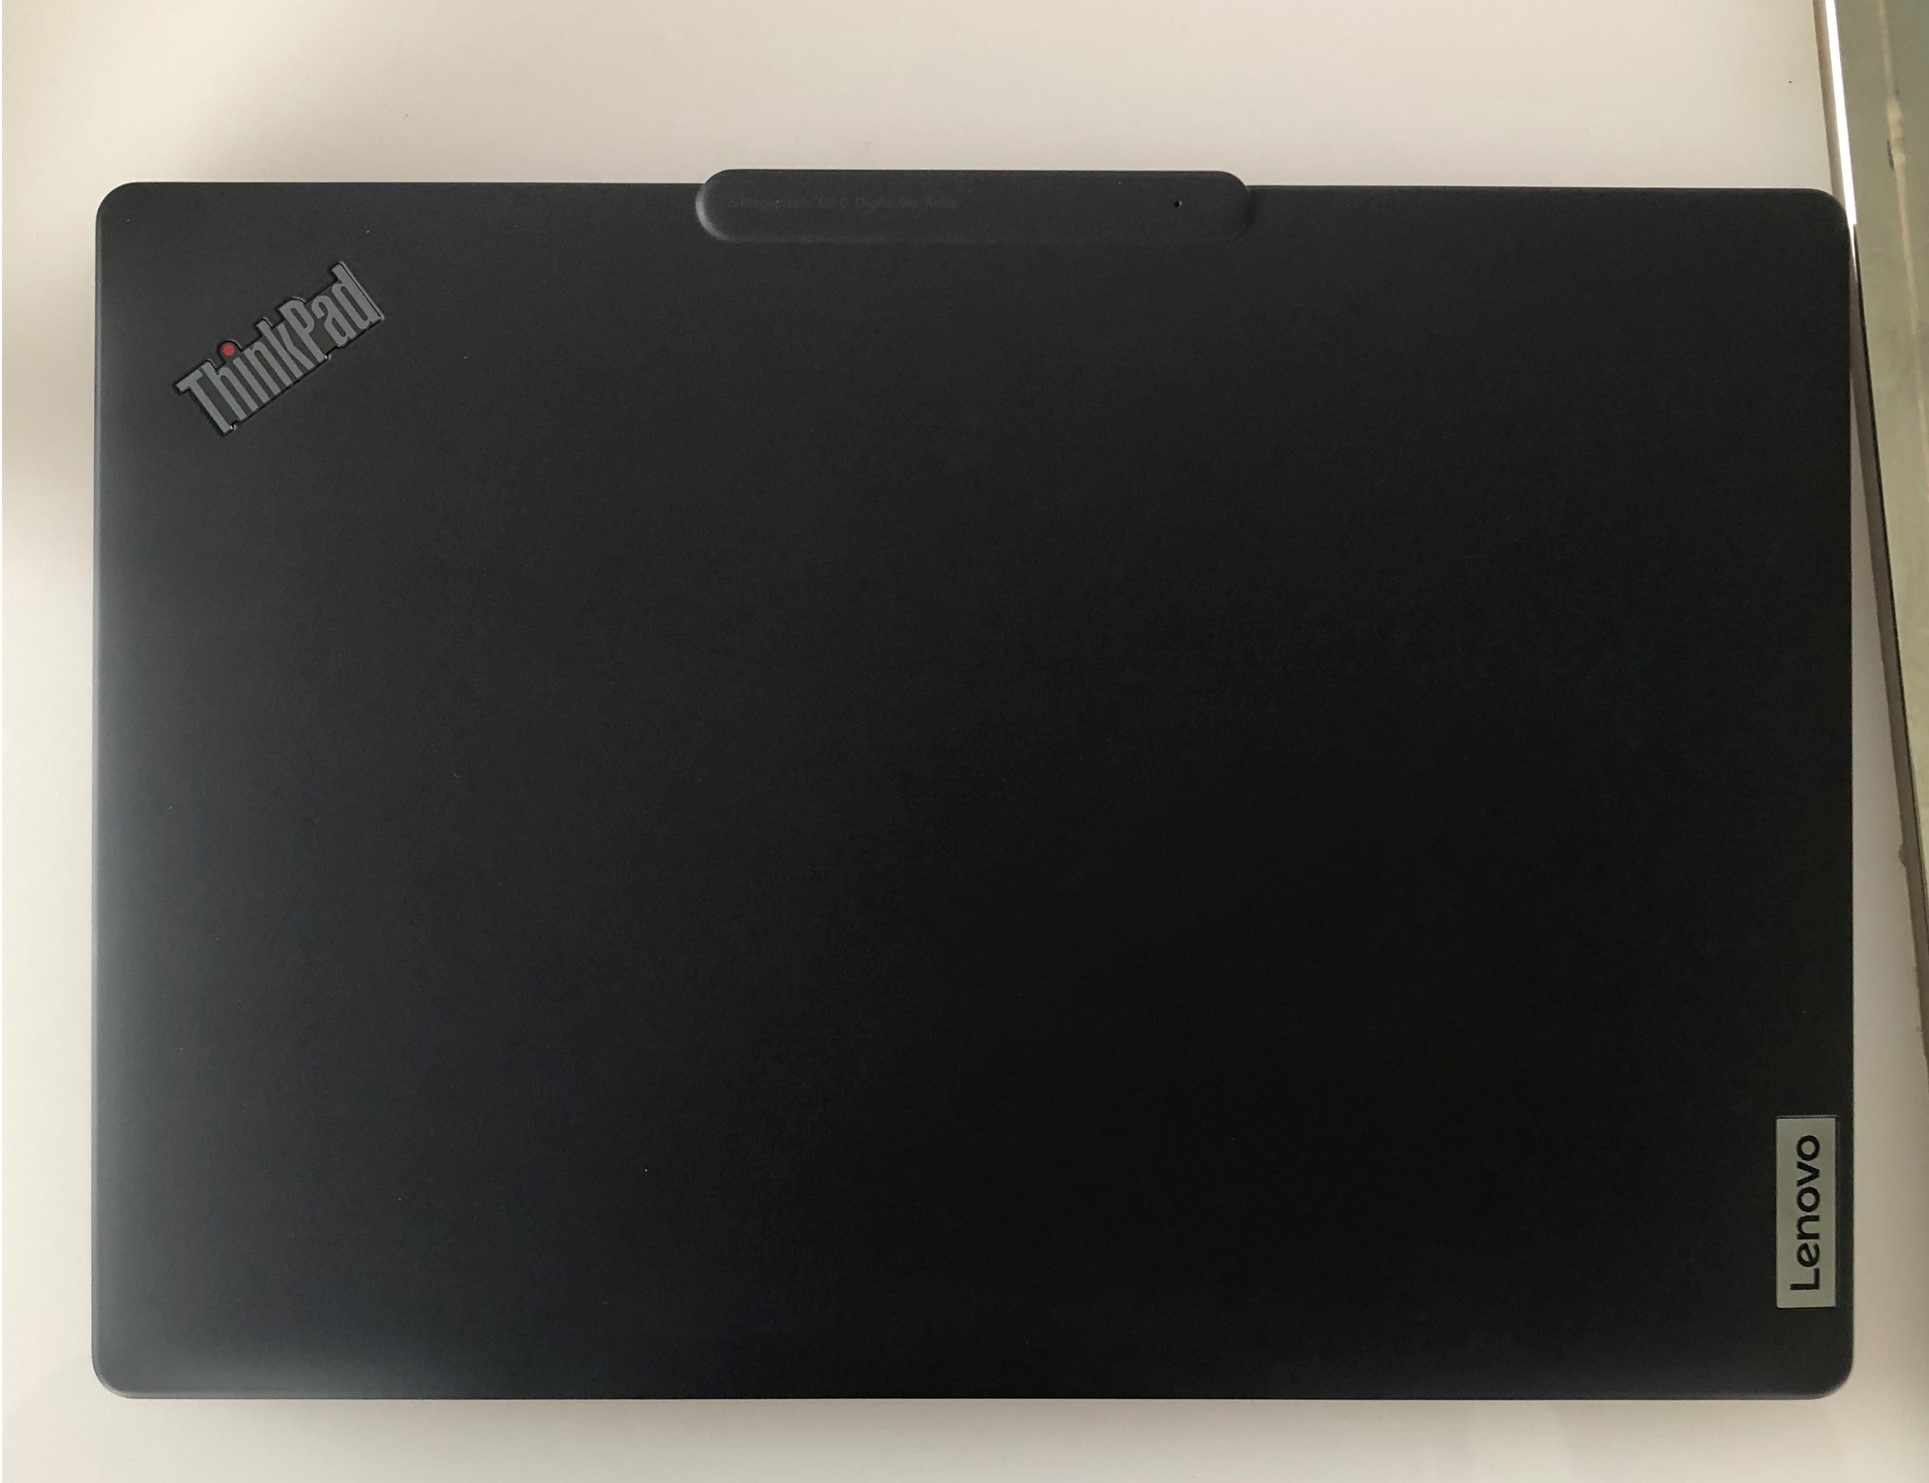 Lenovo announces the first Arm-based ThinkPad | Ars Technica